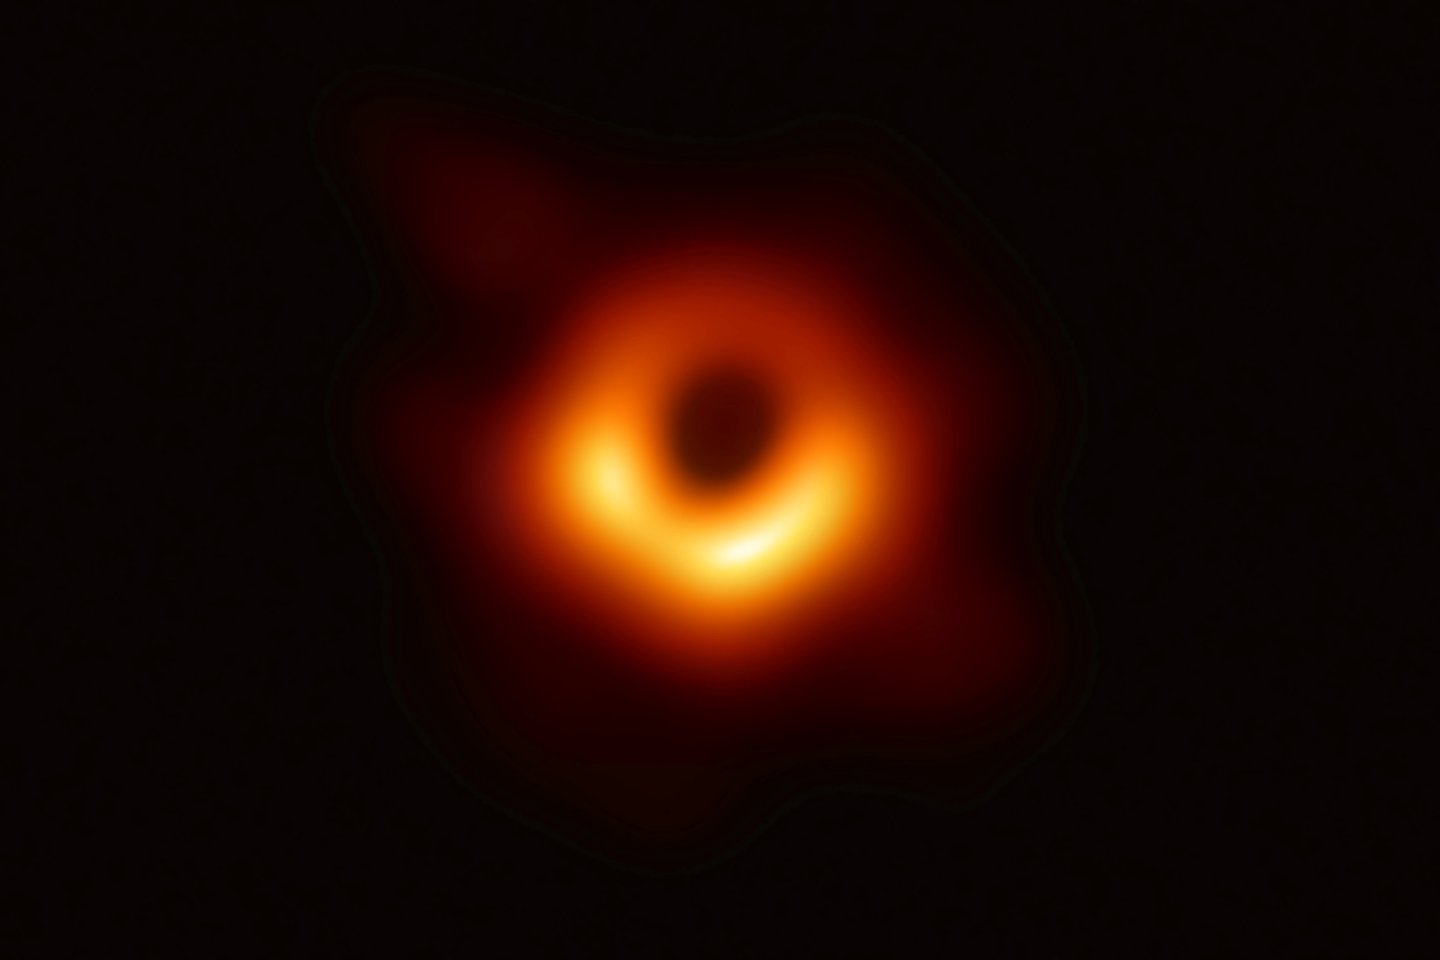   Tamsus apskritimas centre yra juodosios skylės šešėlis, ribojamas šviesių dujų, gaubiančių skylę ir į ją krentančių.<br> Reuters / Scanpix nuotr.